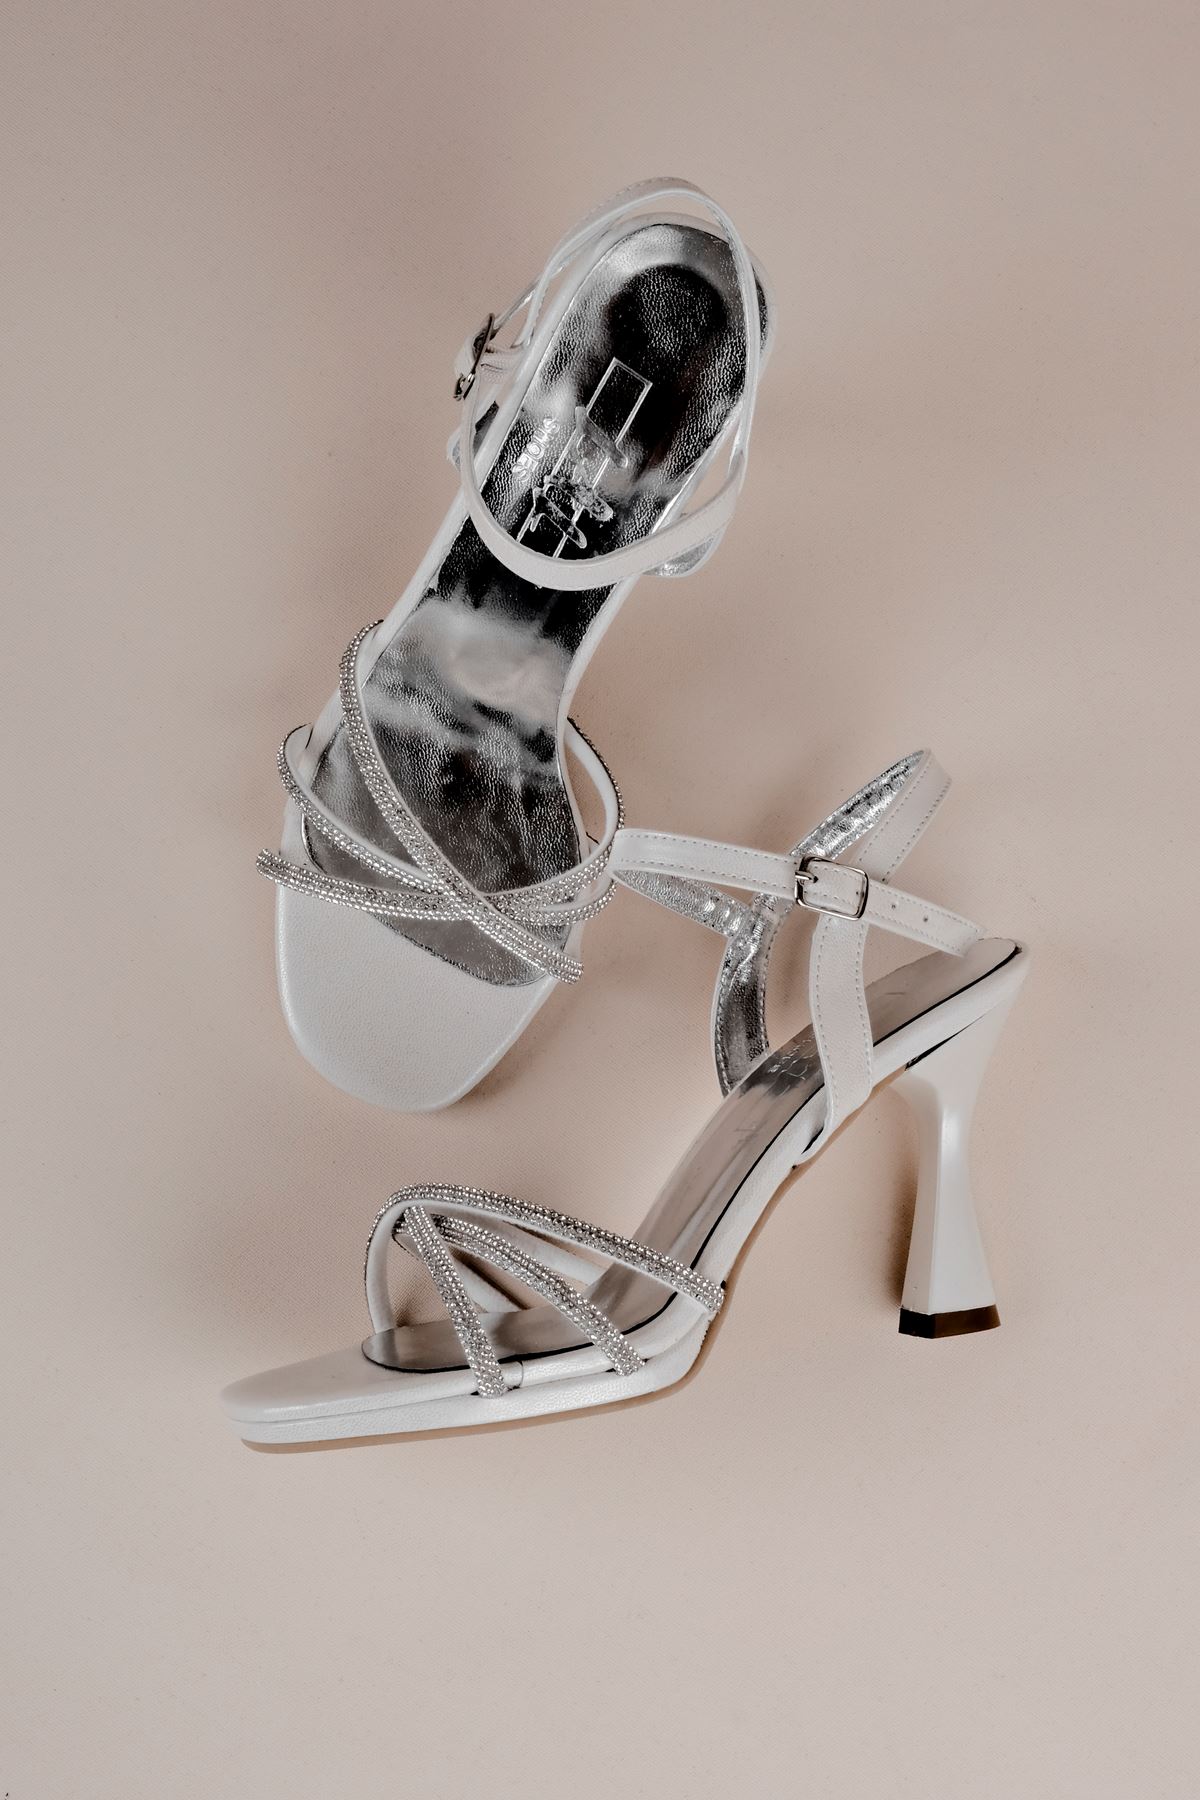 Aster Kadın Çapraz 3 Bantlı Taşlı Topuklu Ayakkabı-SEDEF